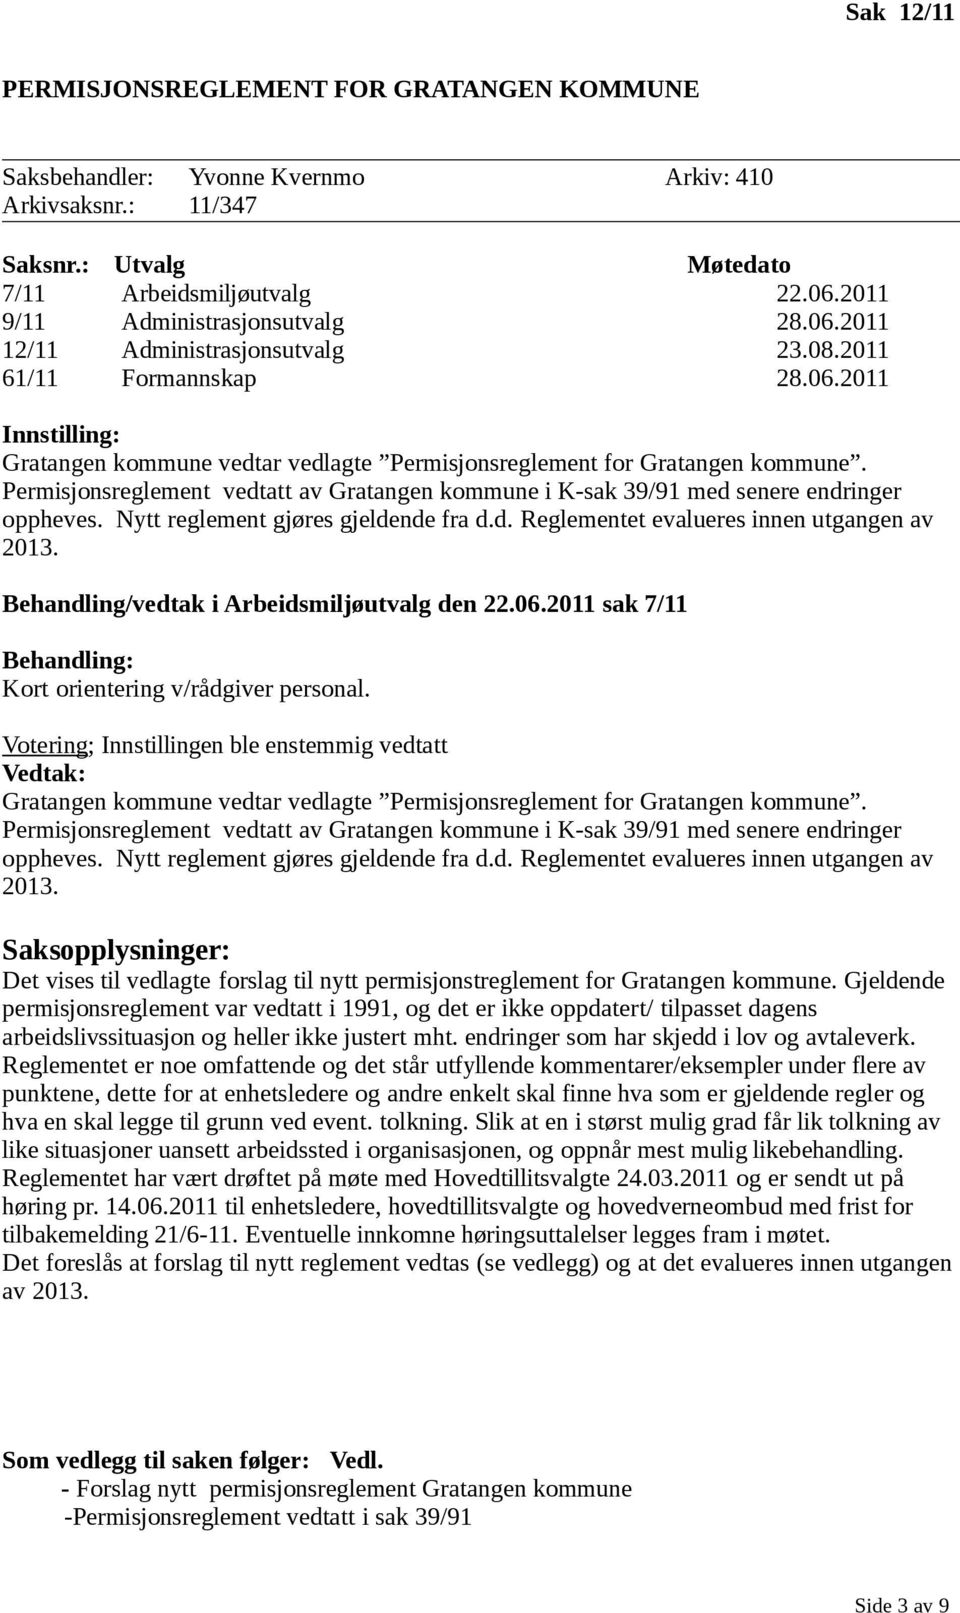 Permisjonsreglement vedtatt av Gratangen kommune i K-sak 39/91 med senere endringer oppheves. Nytt reglement gjøres gjeldende fra d.d. Reglementet evalueres innen utgangen av 2013.